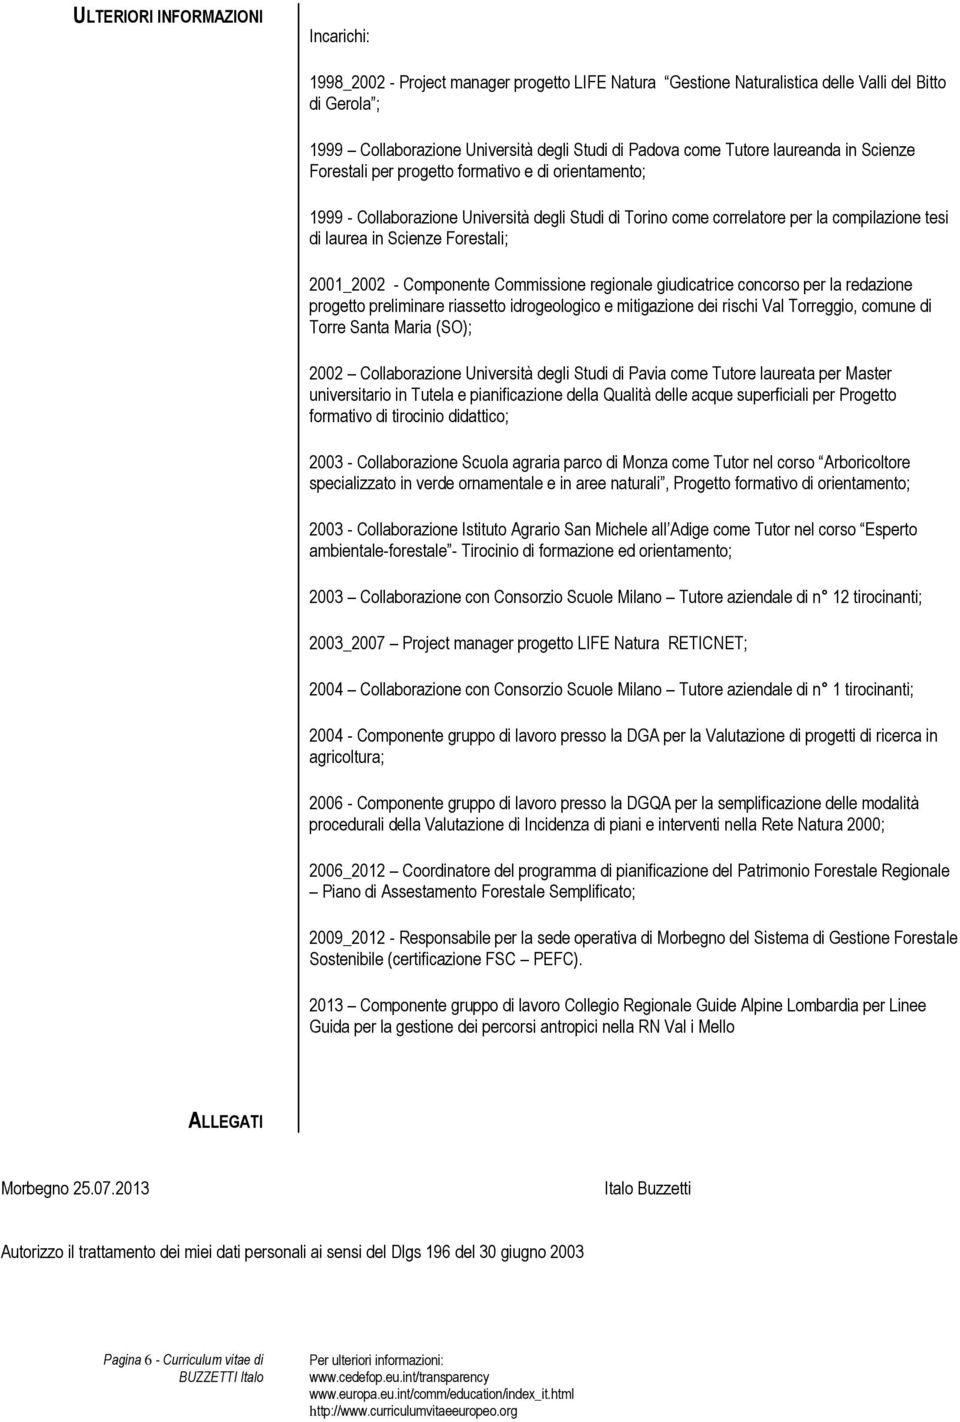 Forestali; 2001_2002 - Componente Commissione regionale giudicatrice concorso per la redazione progetto preliminare riassetto idrogeologico e mitigazione dei rischi Val Torreggio, comune di Torre